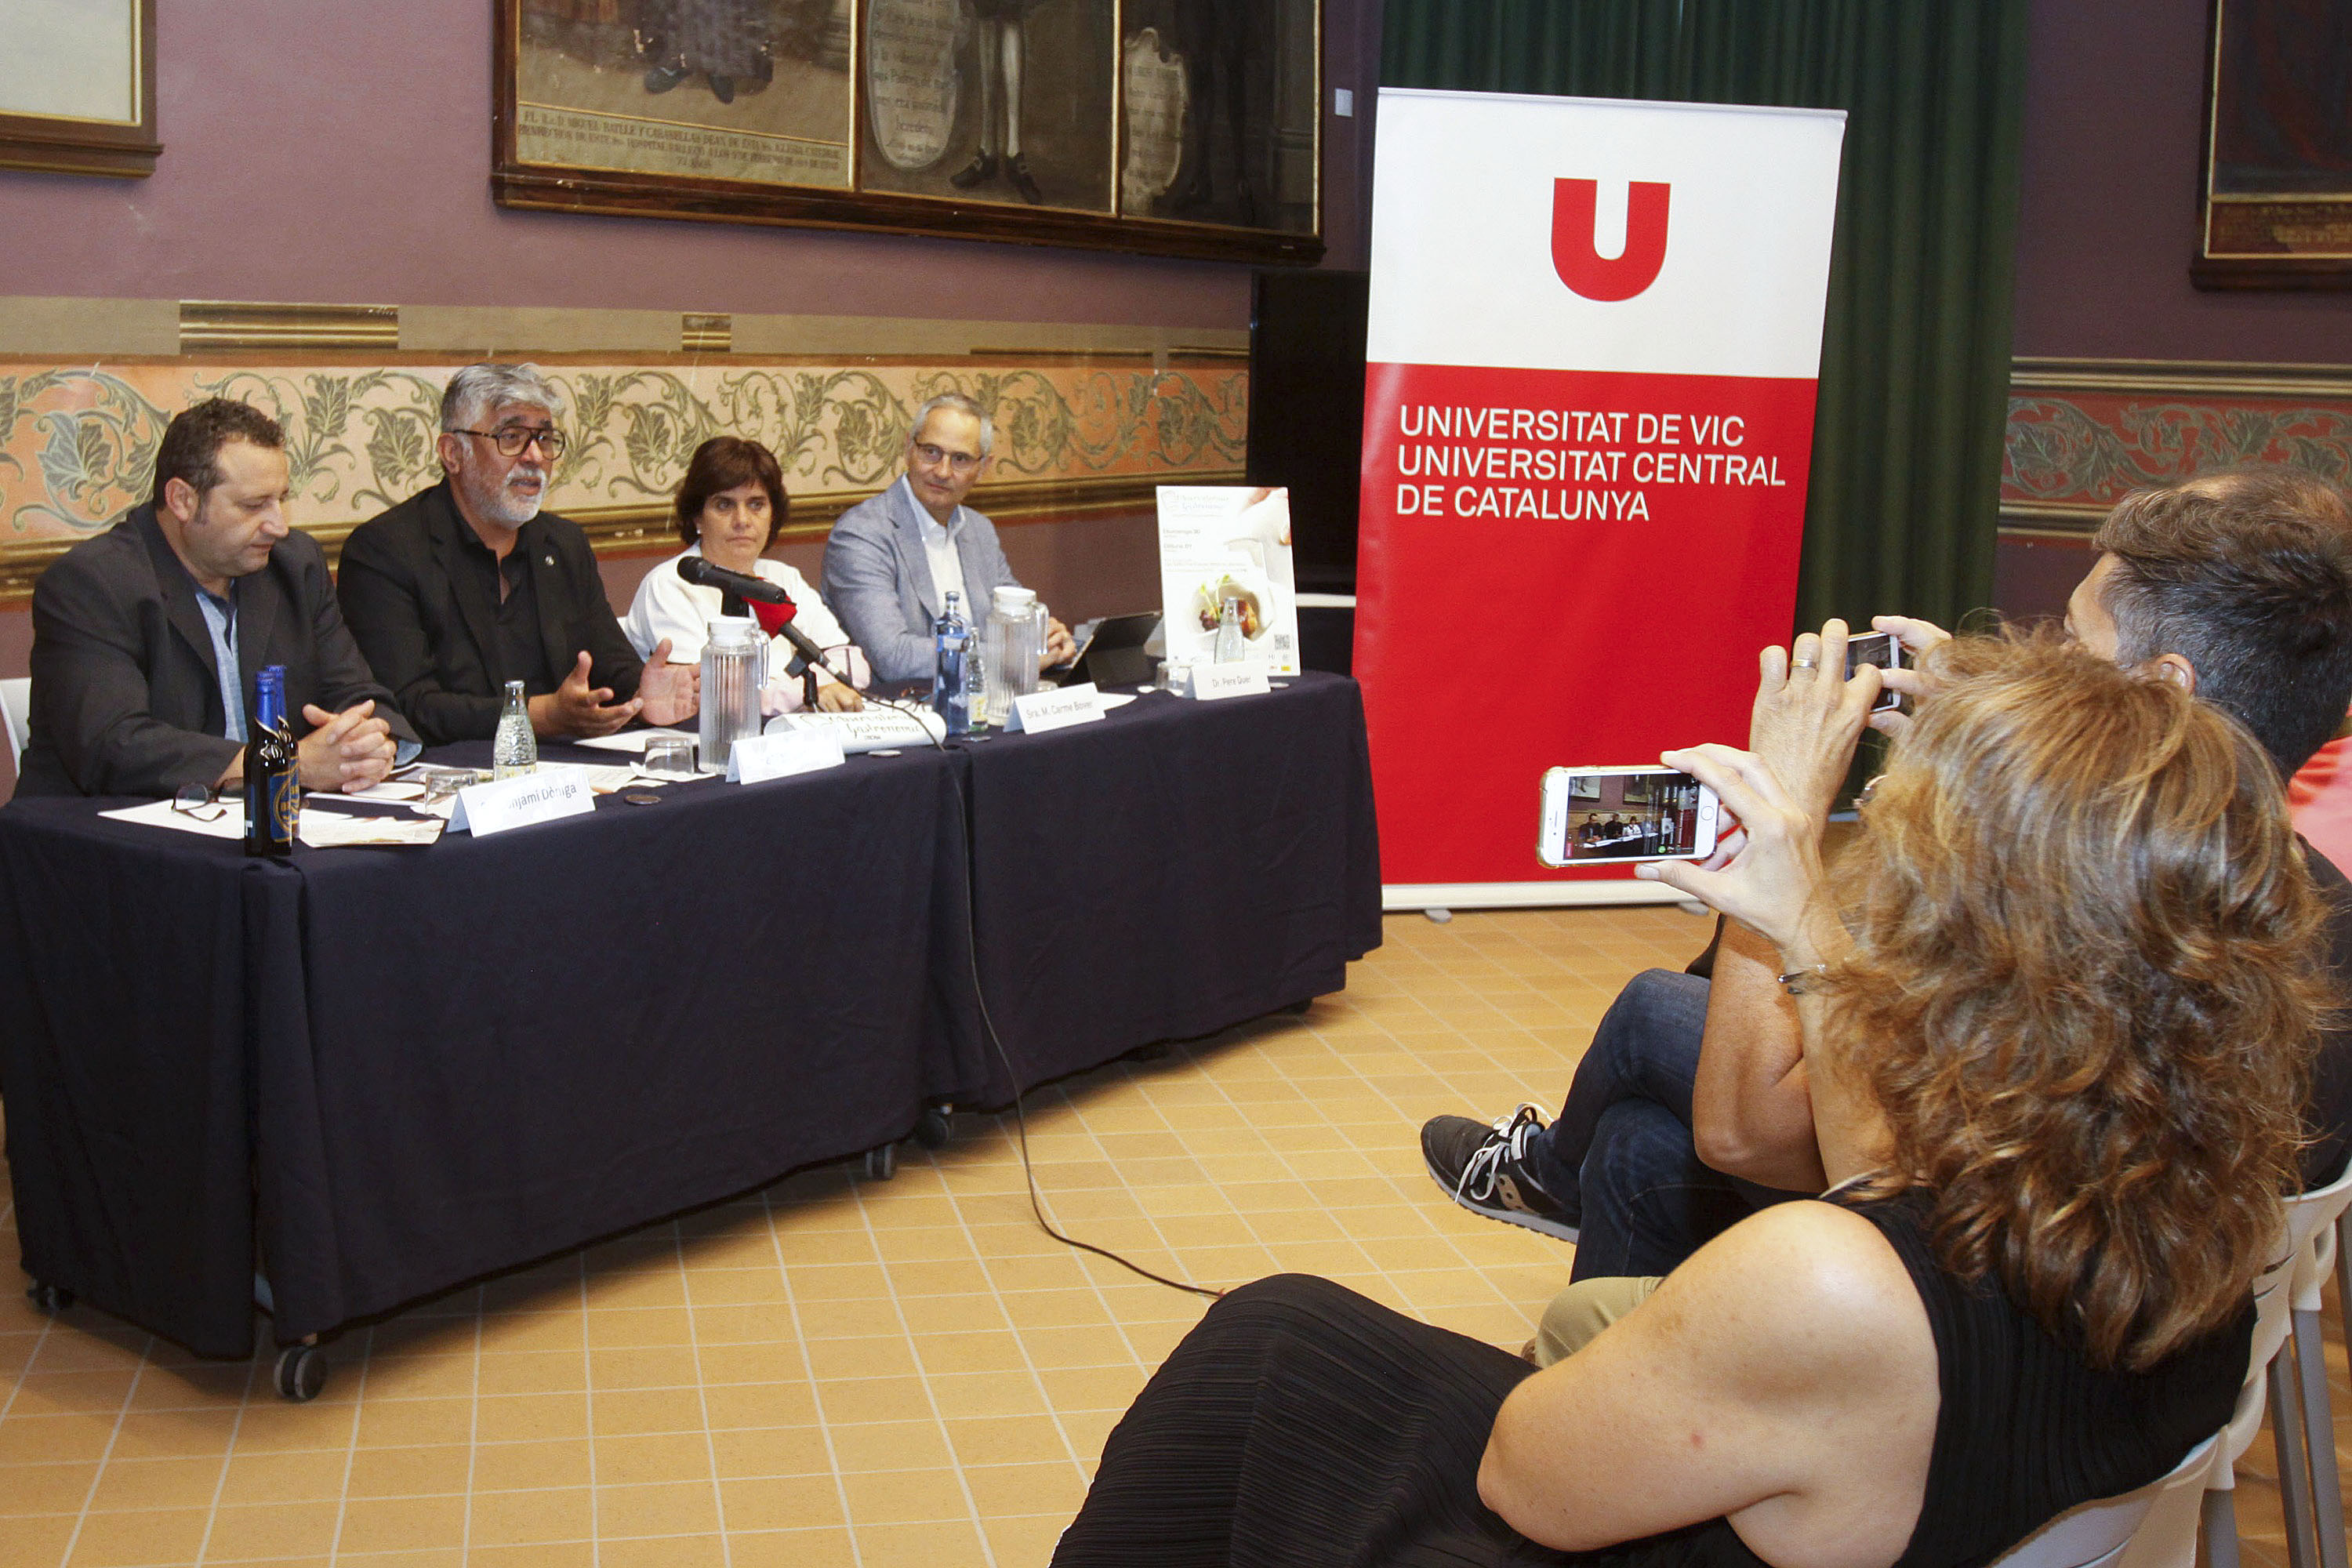 Benjamí Dòniga, Fabián Contreras, Maria Carme Bover i Pere Quer, durant la presentació de la fira